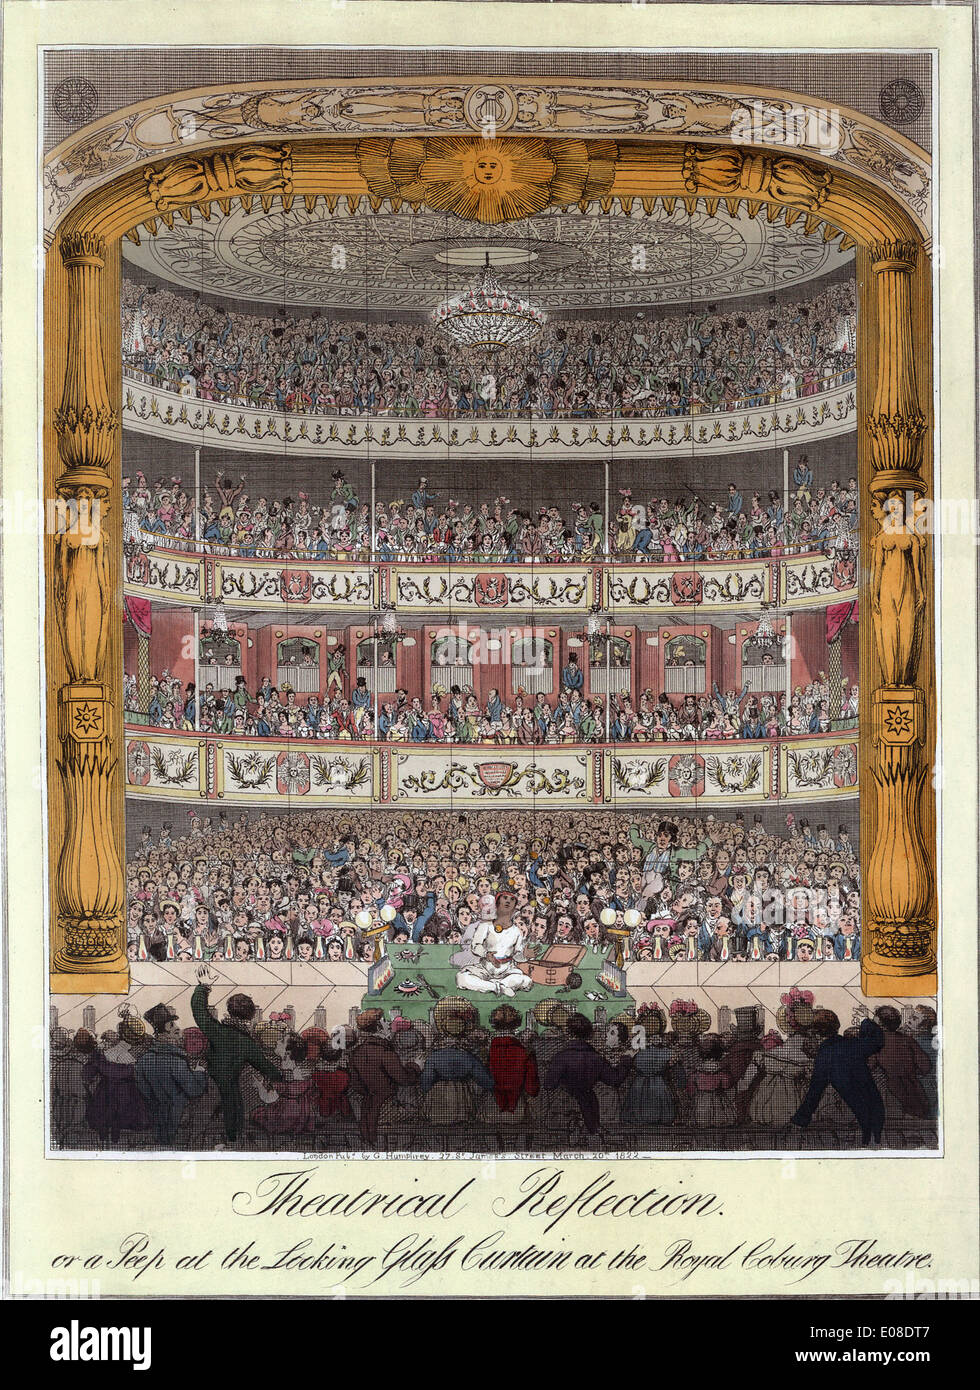 Imprimer Historique de Royal Guanaco Theatre, l'Old Vic Theatre, London, England, UK Banque D'Images